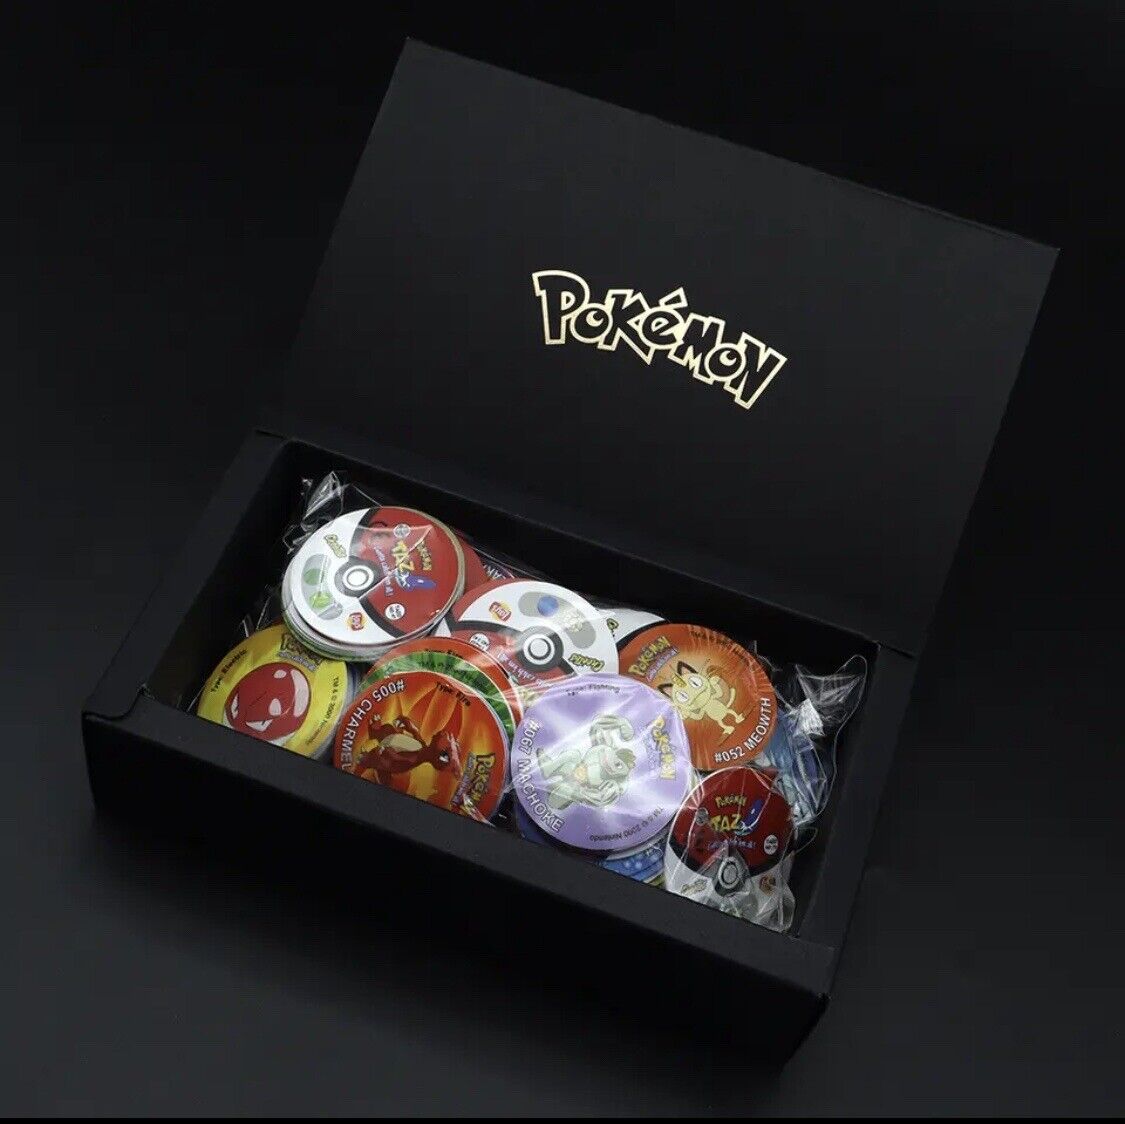  Pokemon Tazos,Taps,Pogs Complete Set. 160 with box.